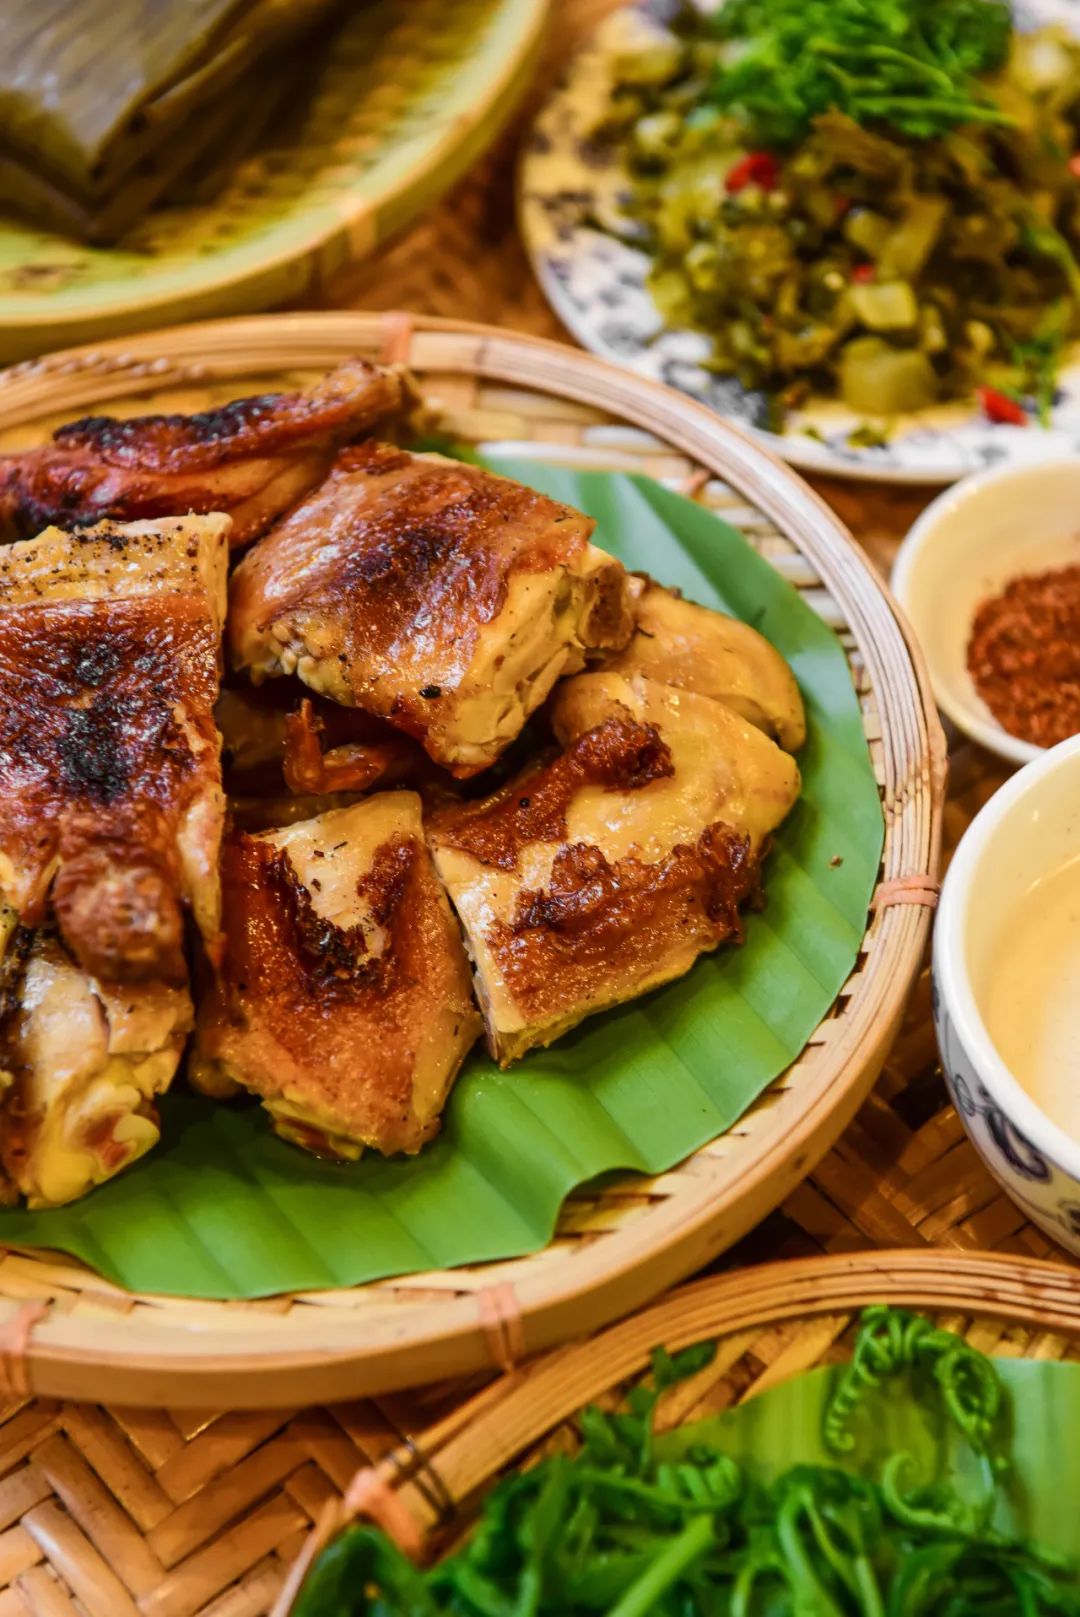 ▲ 云南西双版纳的香茅草烤鸡。图/视觉中国